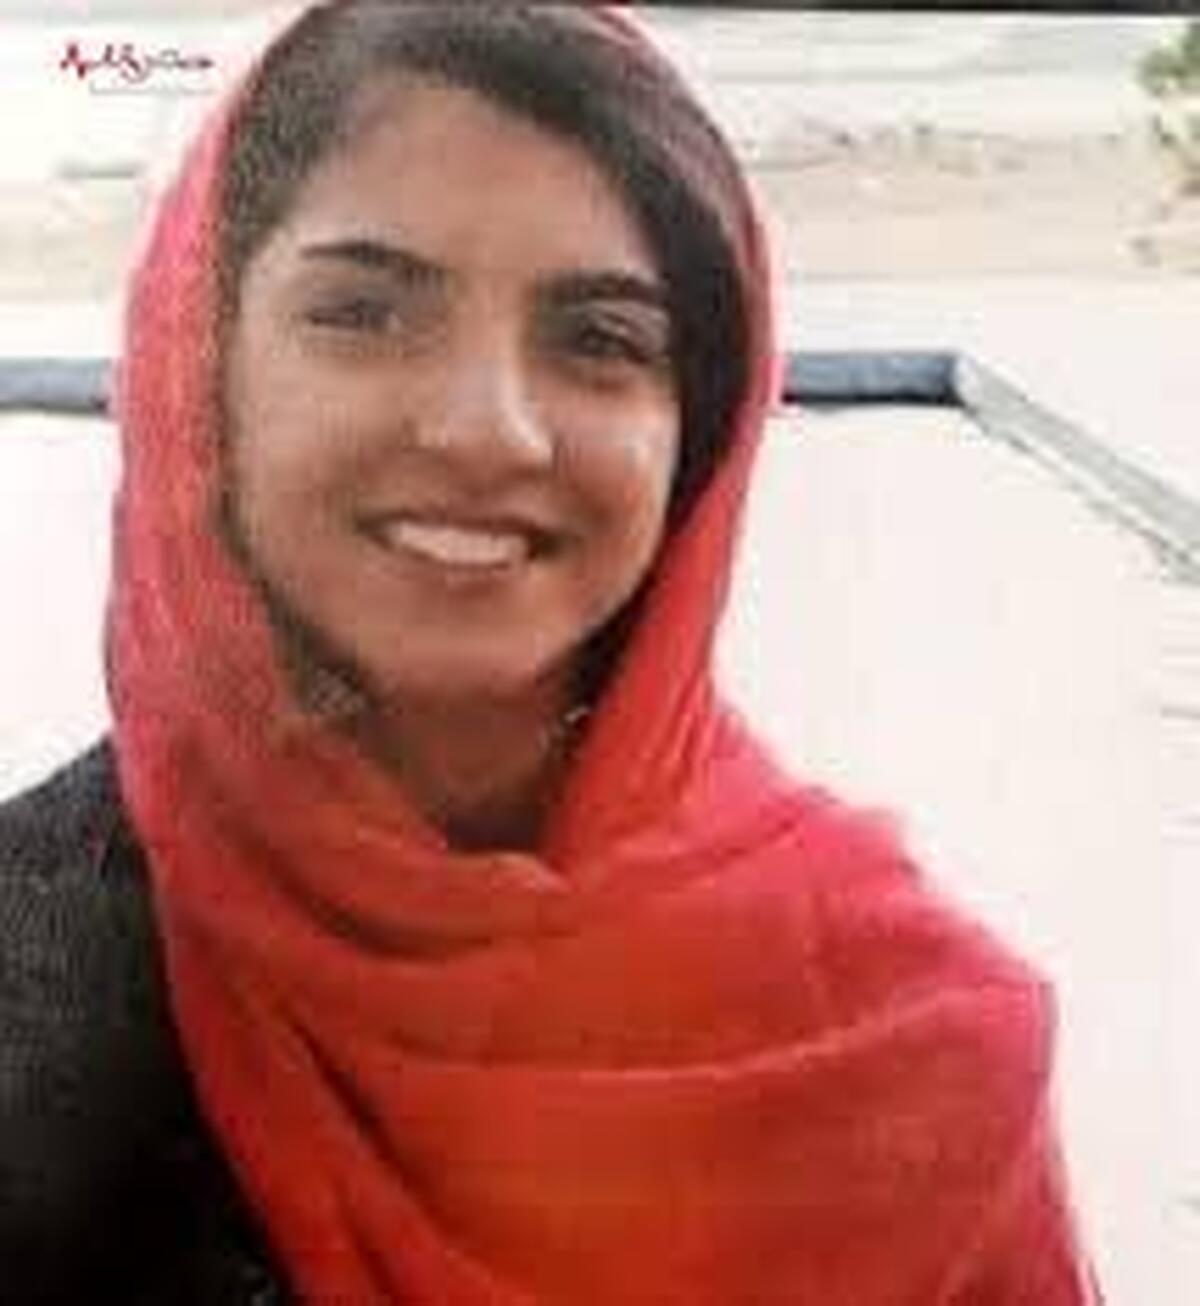 قتل شیما، دختر ۱۶ ساله در شرق تهران/ دفن جسد در حیاط خانه قاتل+ ماجرا چیست؟